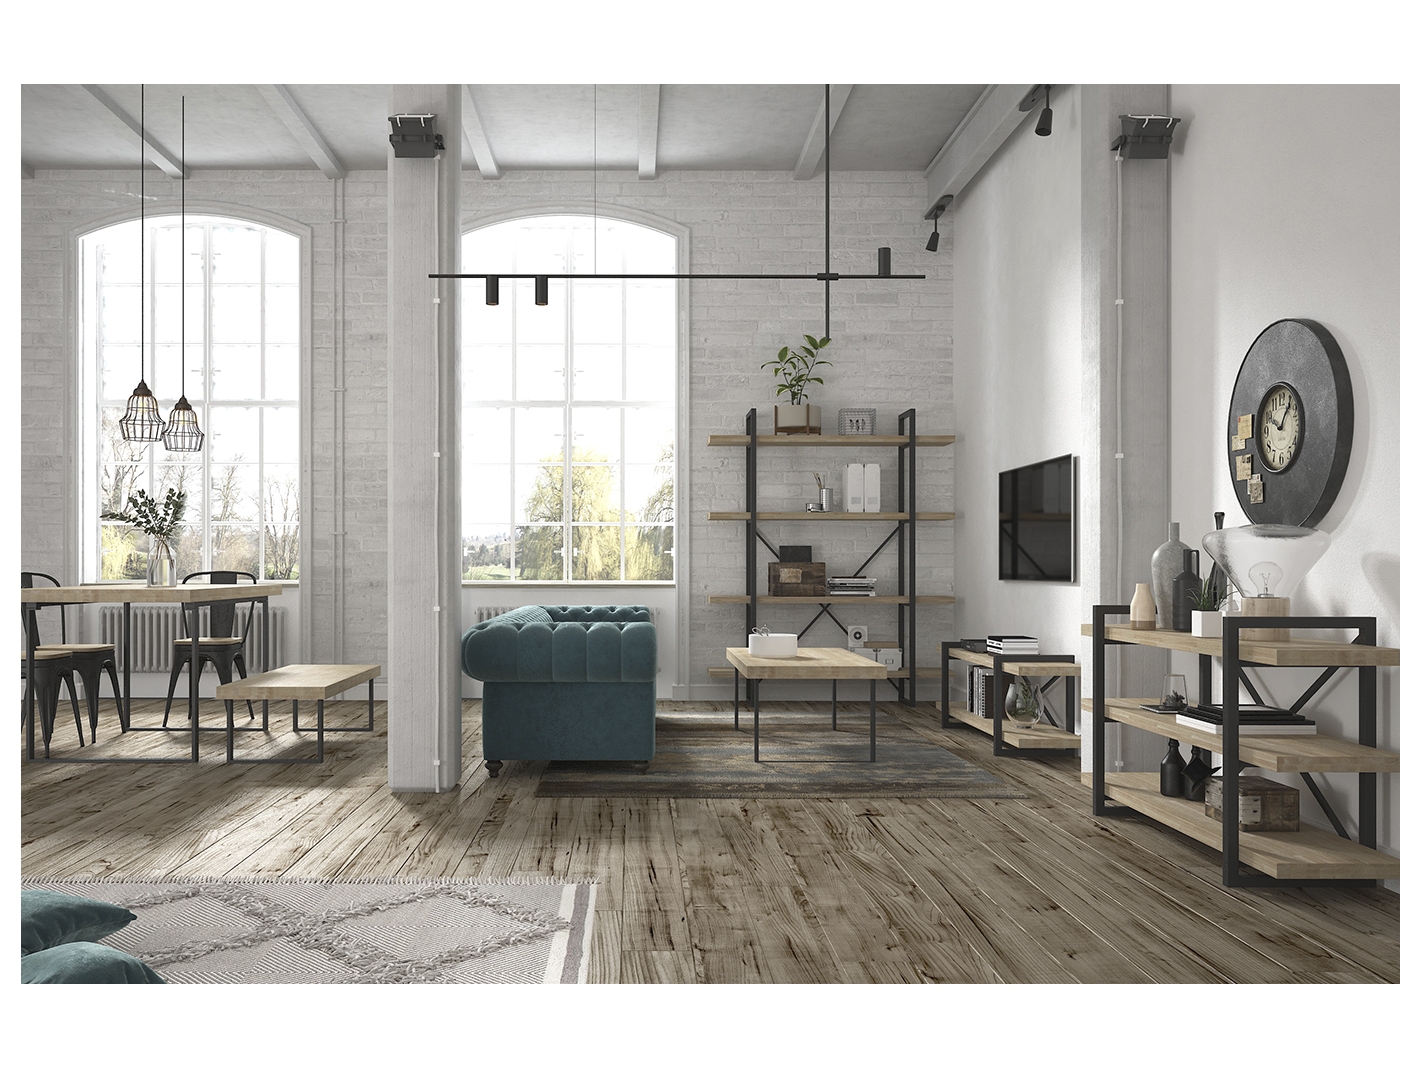 Mueble auxiliar para el salón de estilo industrial en madera natural